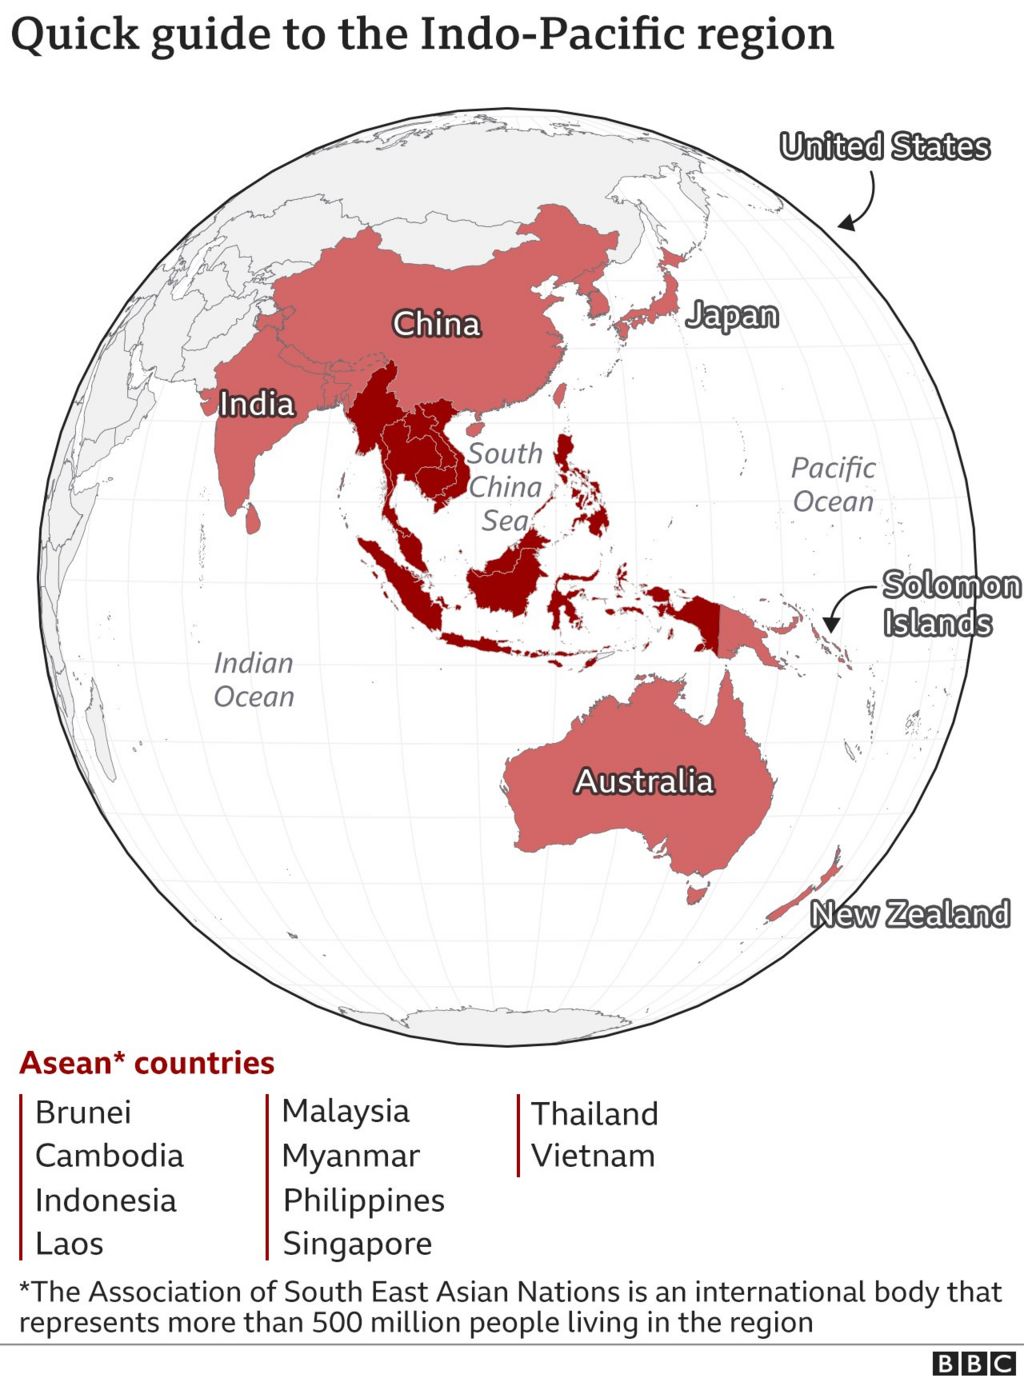 Карта мира, показывающая расположение ключевых стран Индо-Тихоокеанского региона.